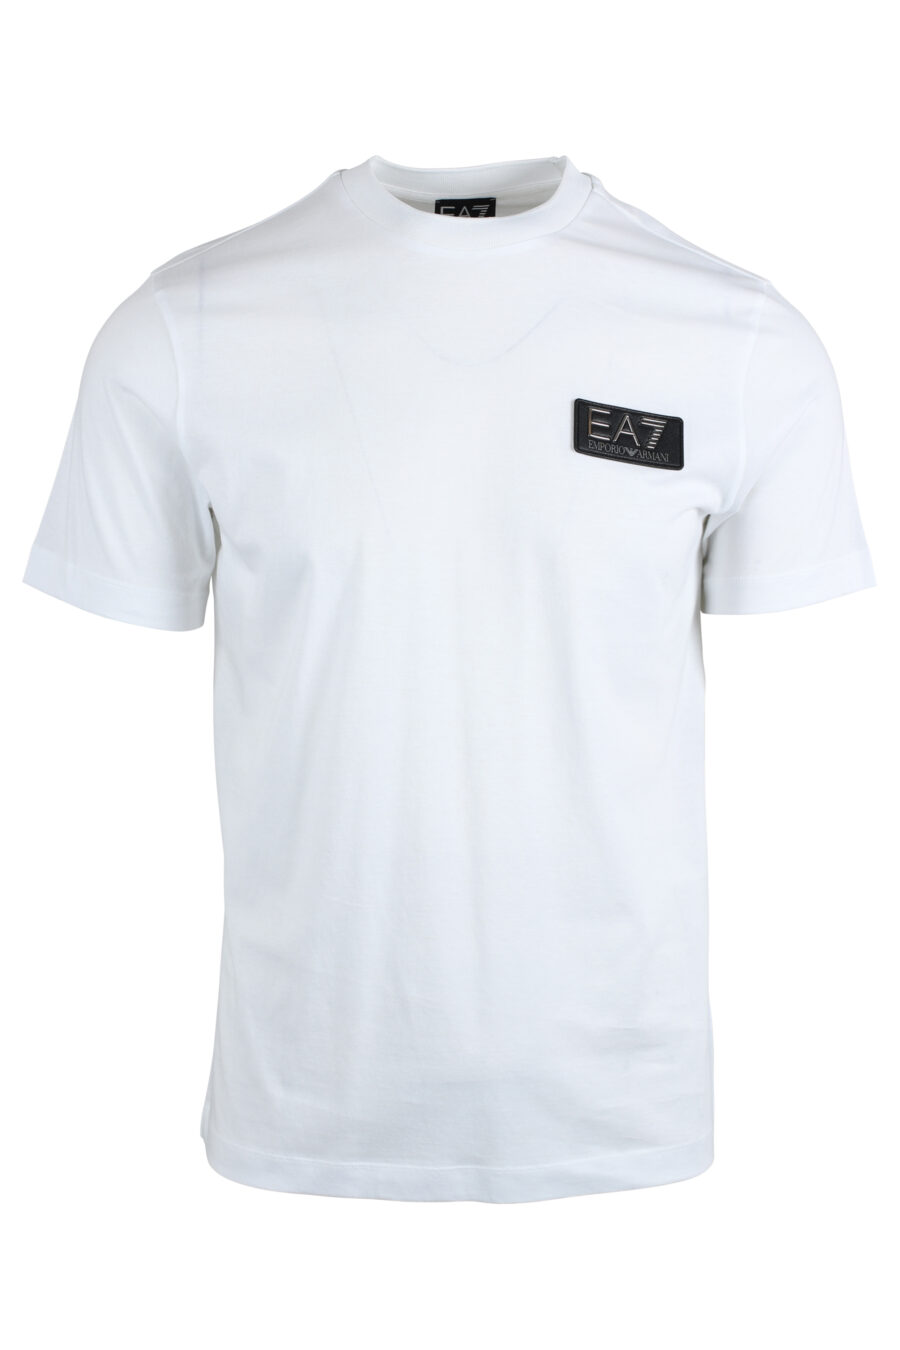 Camiseta blanca con minilogo en parche en metal - IMG 4800